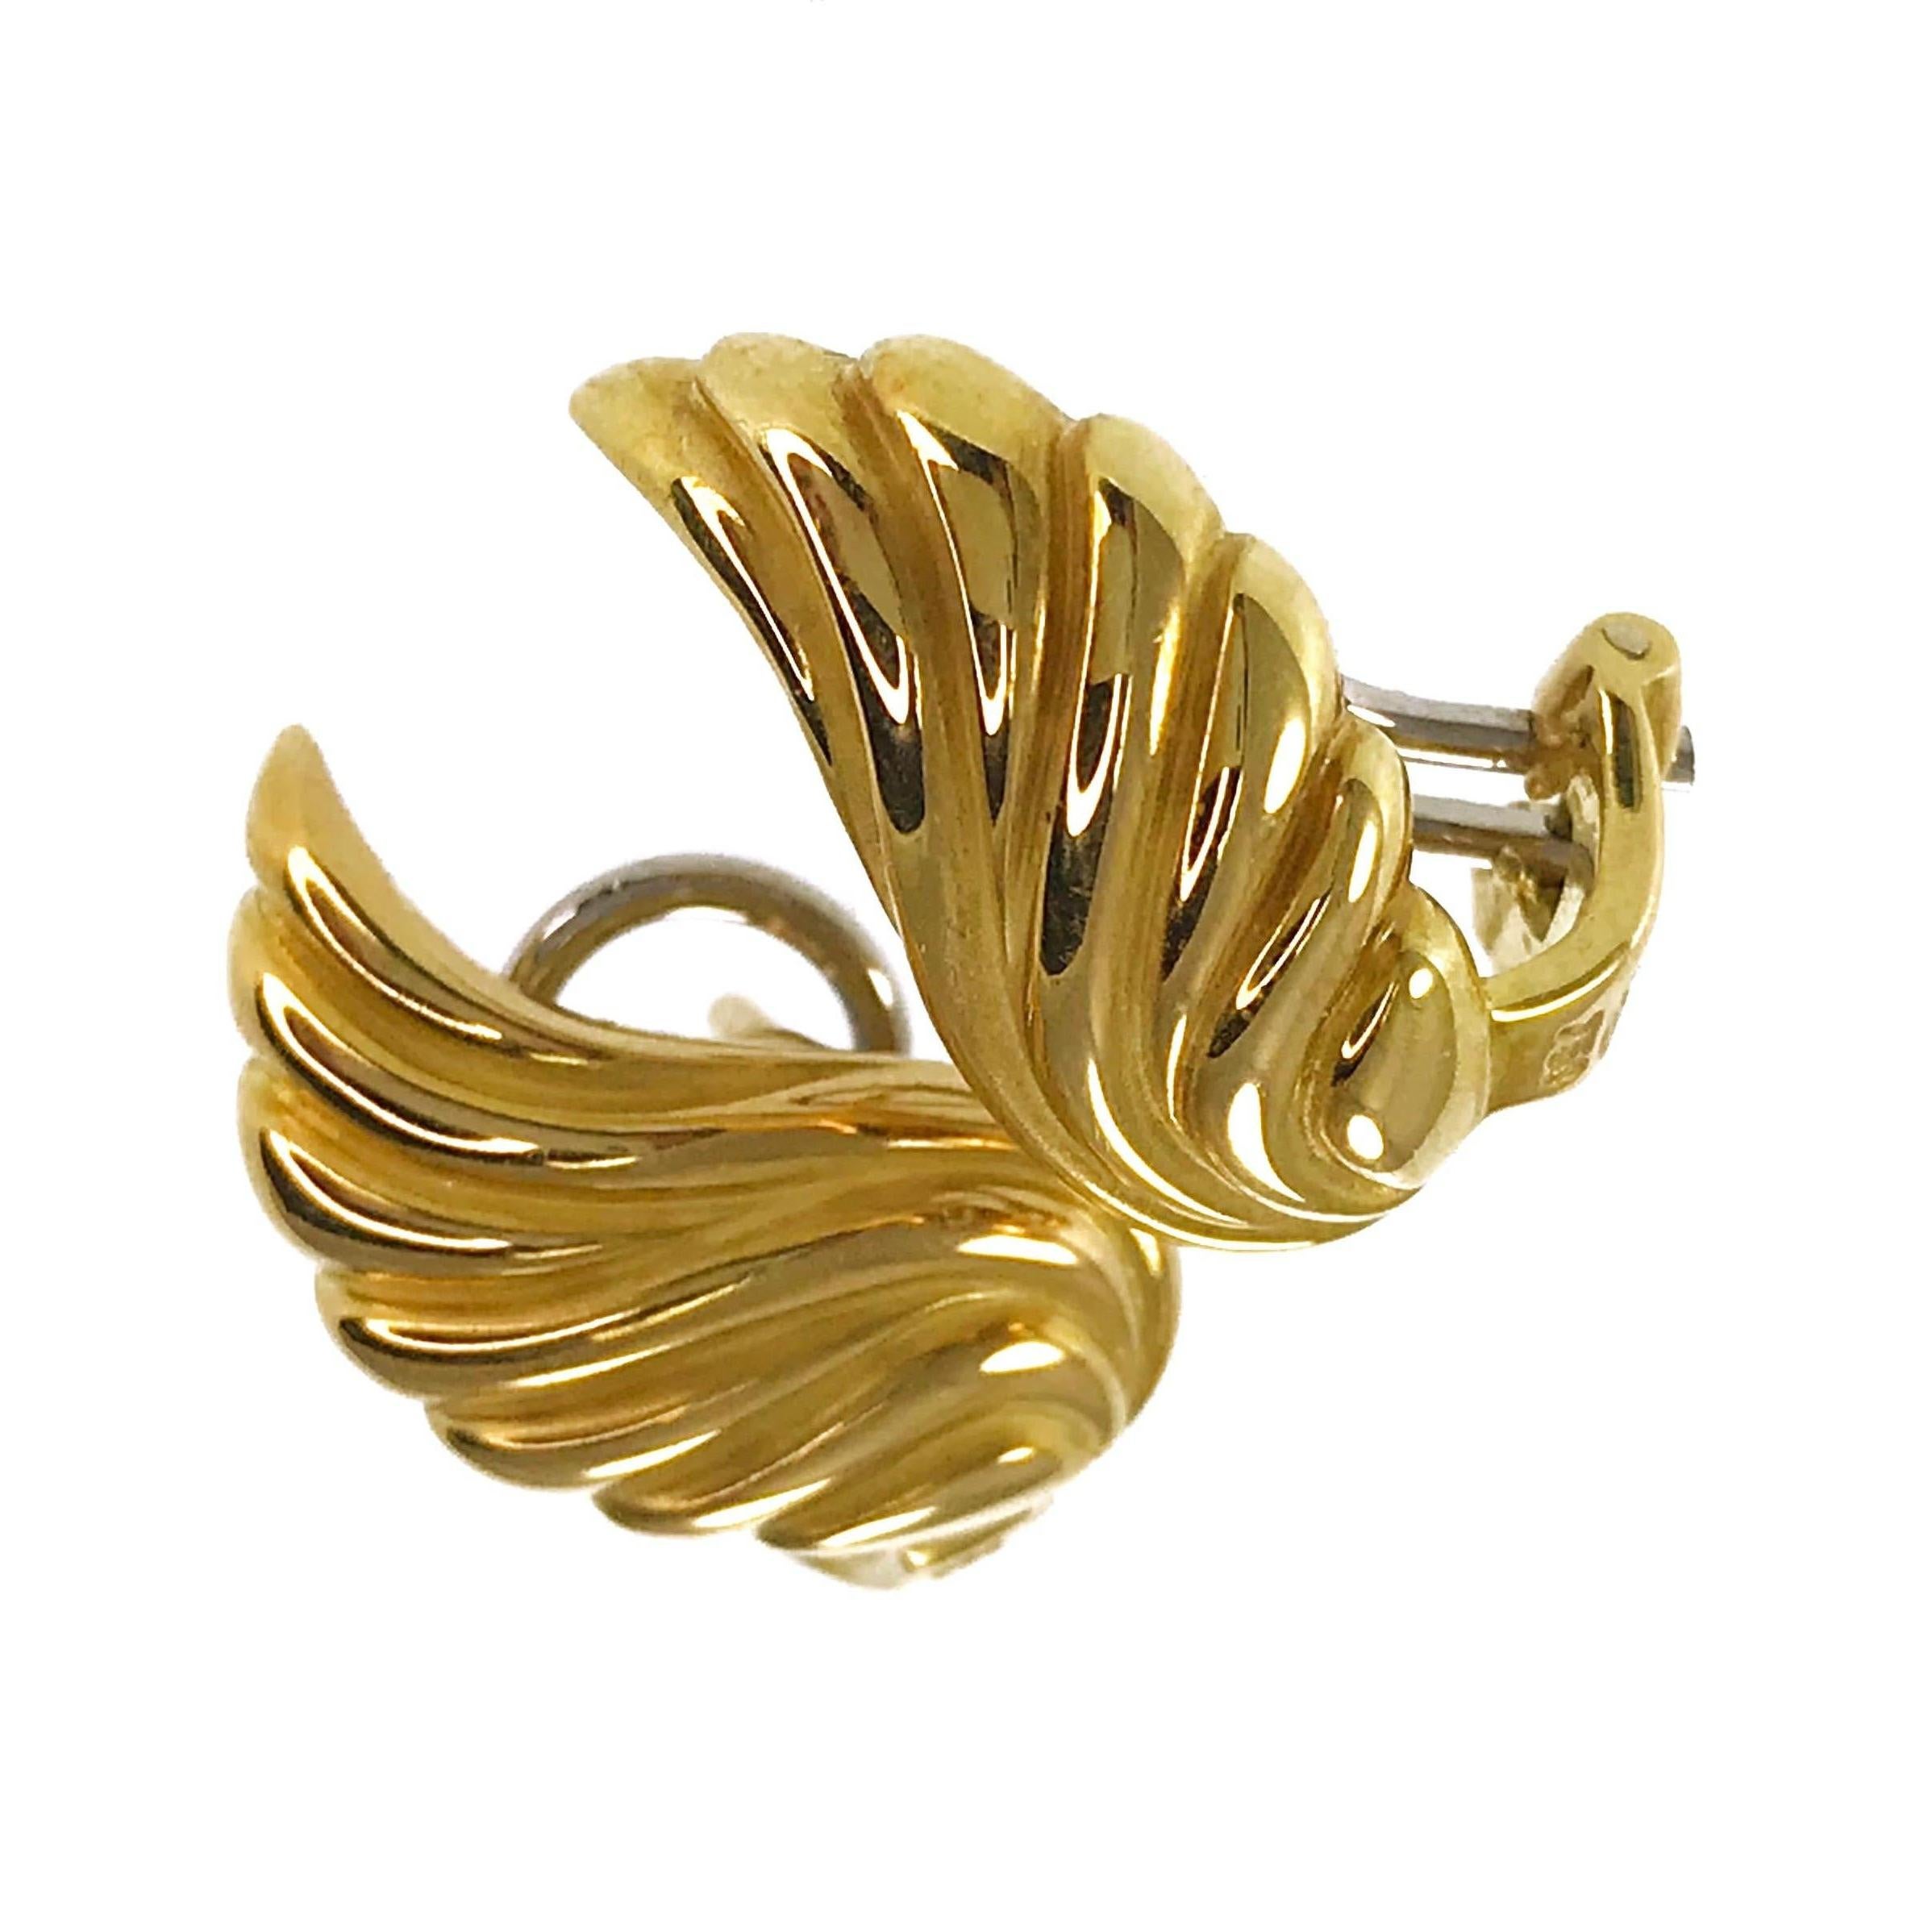 Gübelin 18 Karat Ohrringe in Flügelform. Diese hübschen Ohrringe bestehen aus plastischem Gold, das einen flügelförmigen Tropfenohrring bildet. Der Ohrring misst 18,5 mm in der Breite und 9,6 mm in der Höhe und hat einen kurzen Stift und einen